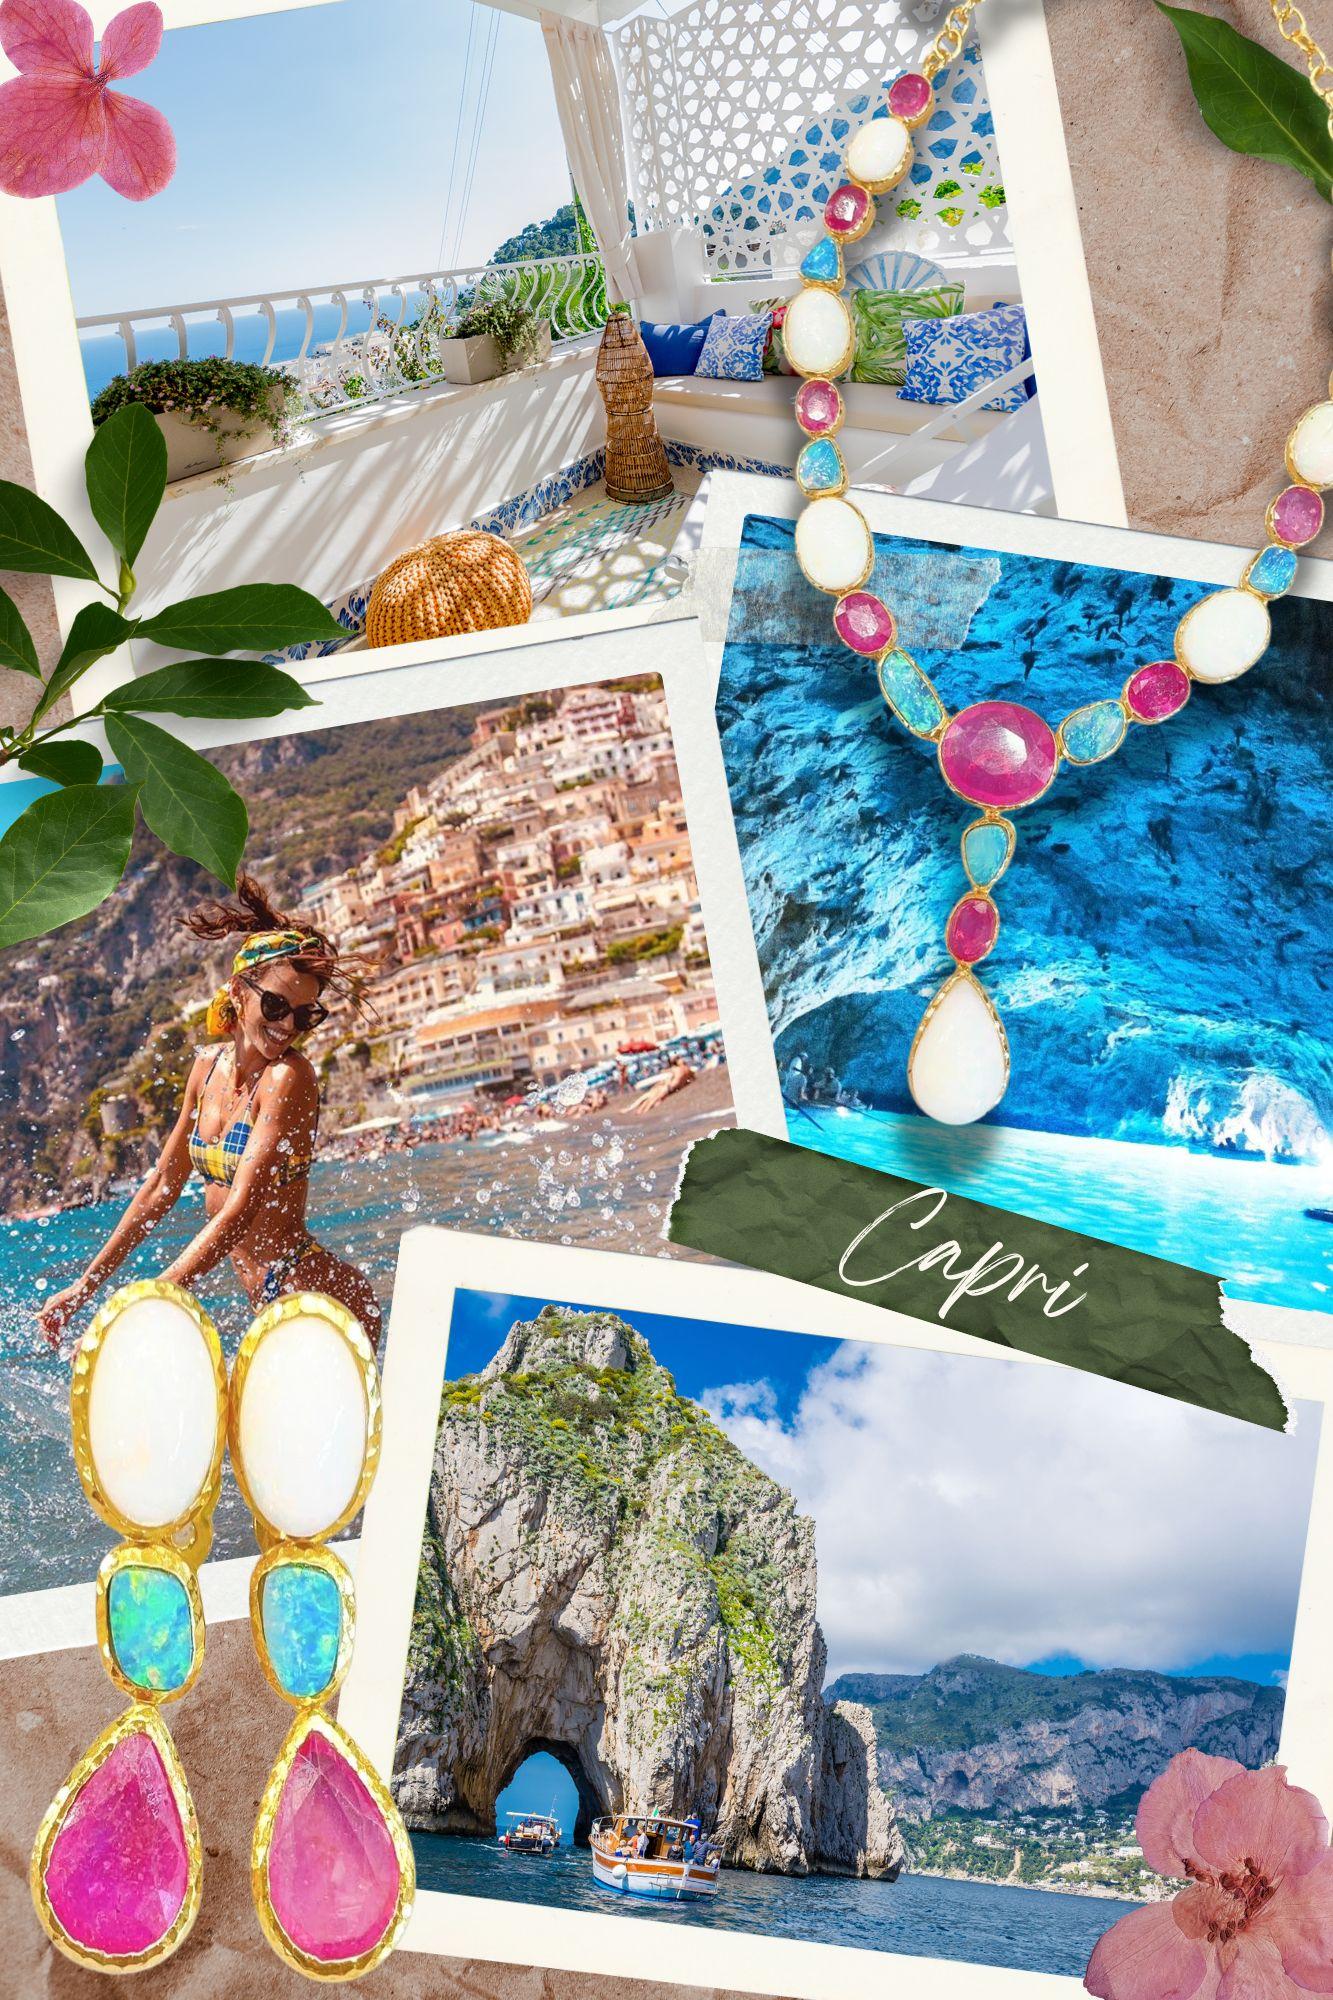 Bochic “Capri” Blue Sapphire & South Sea Pearl Earrings Set In 18K Gold & Silver For Sale 2